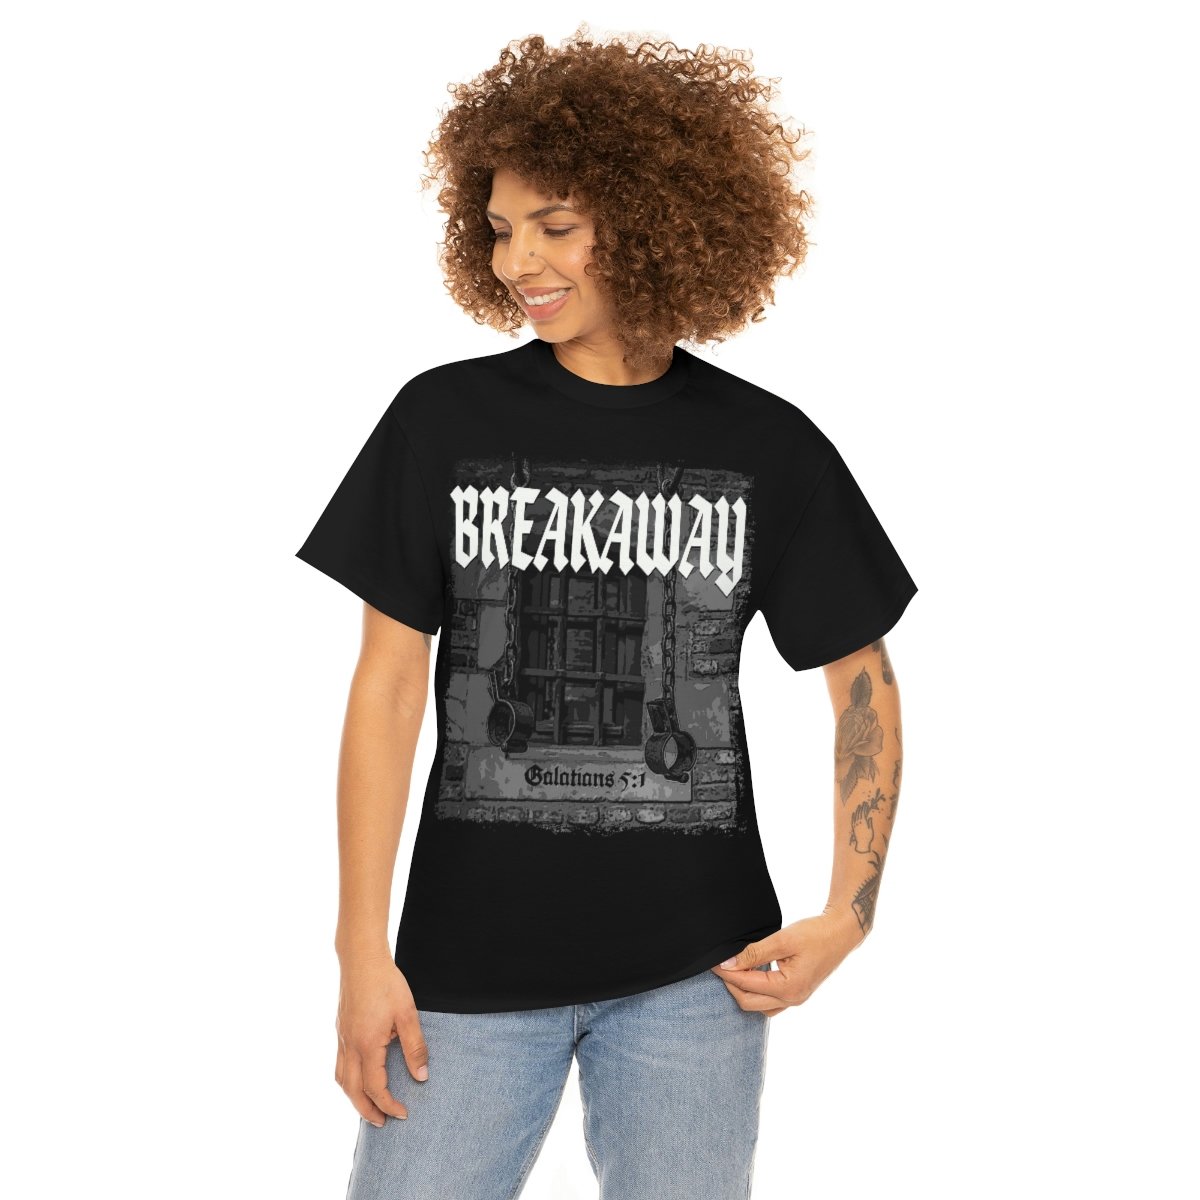 Breakaway – Shackles Short Sleeve Tshirt (5000)